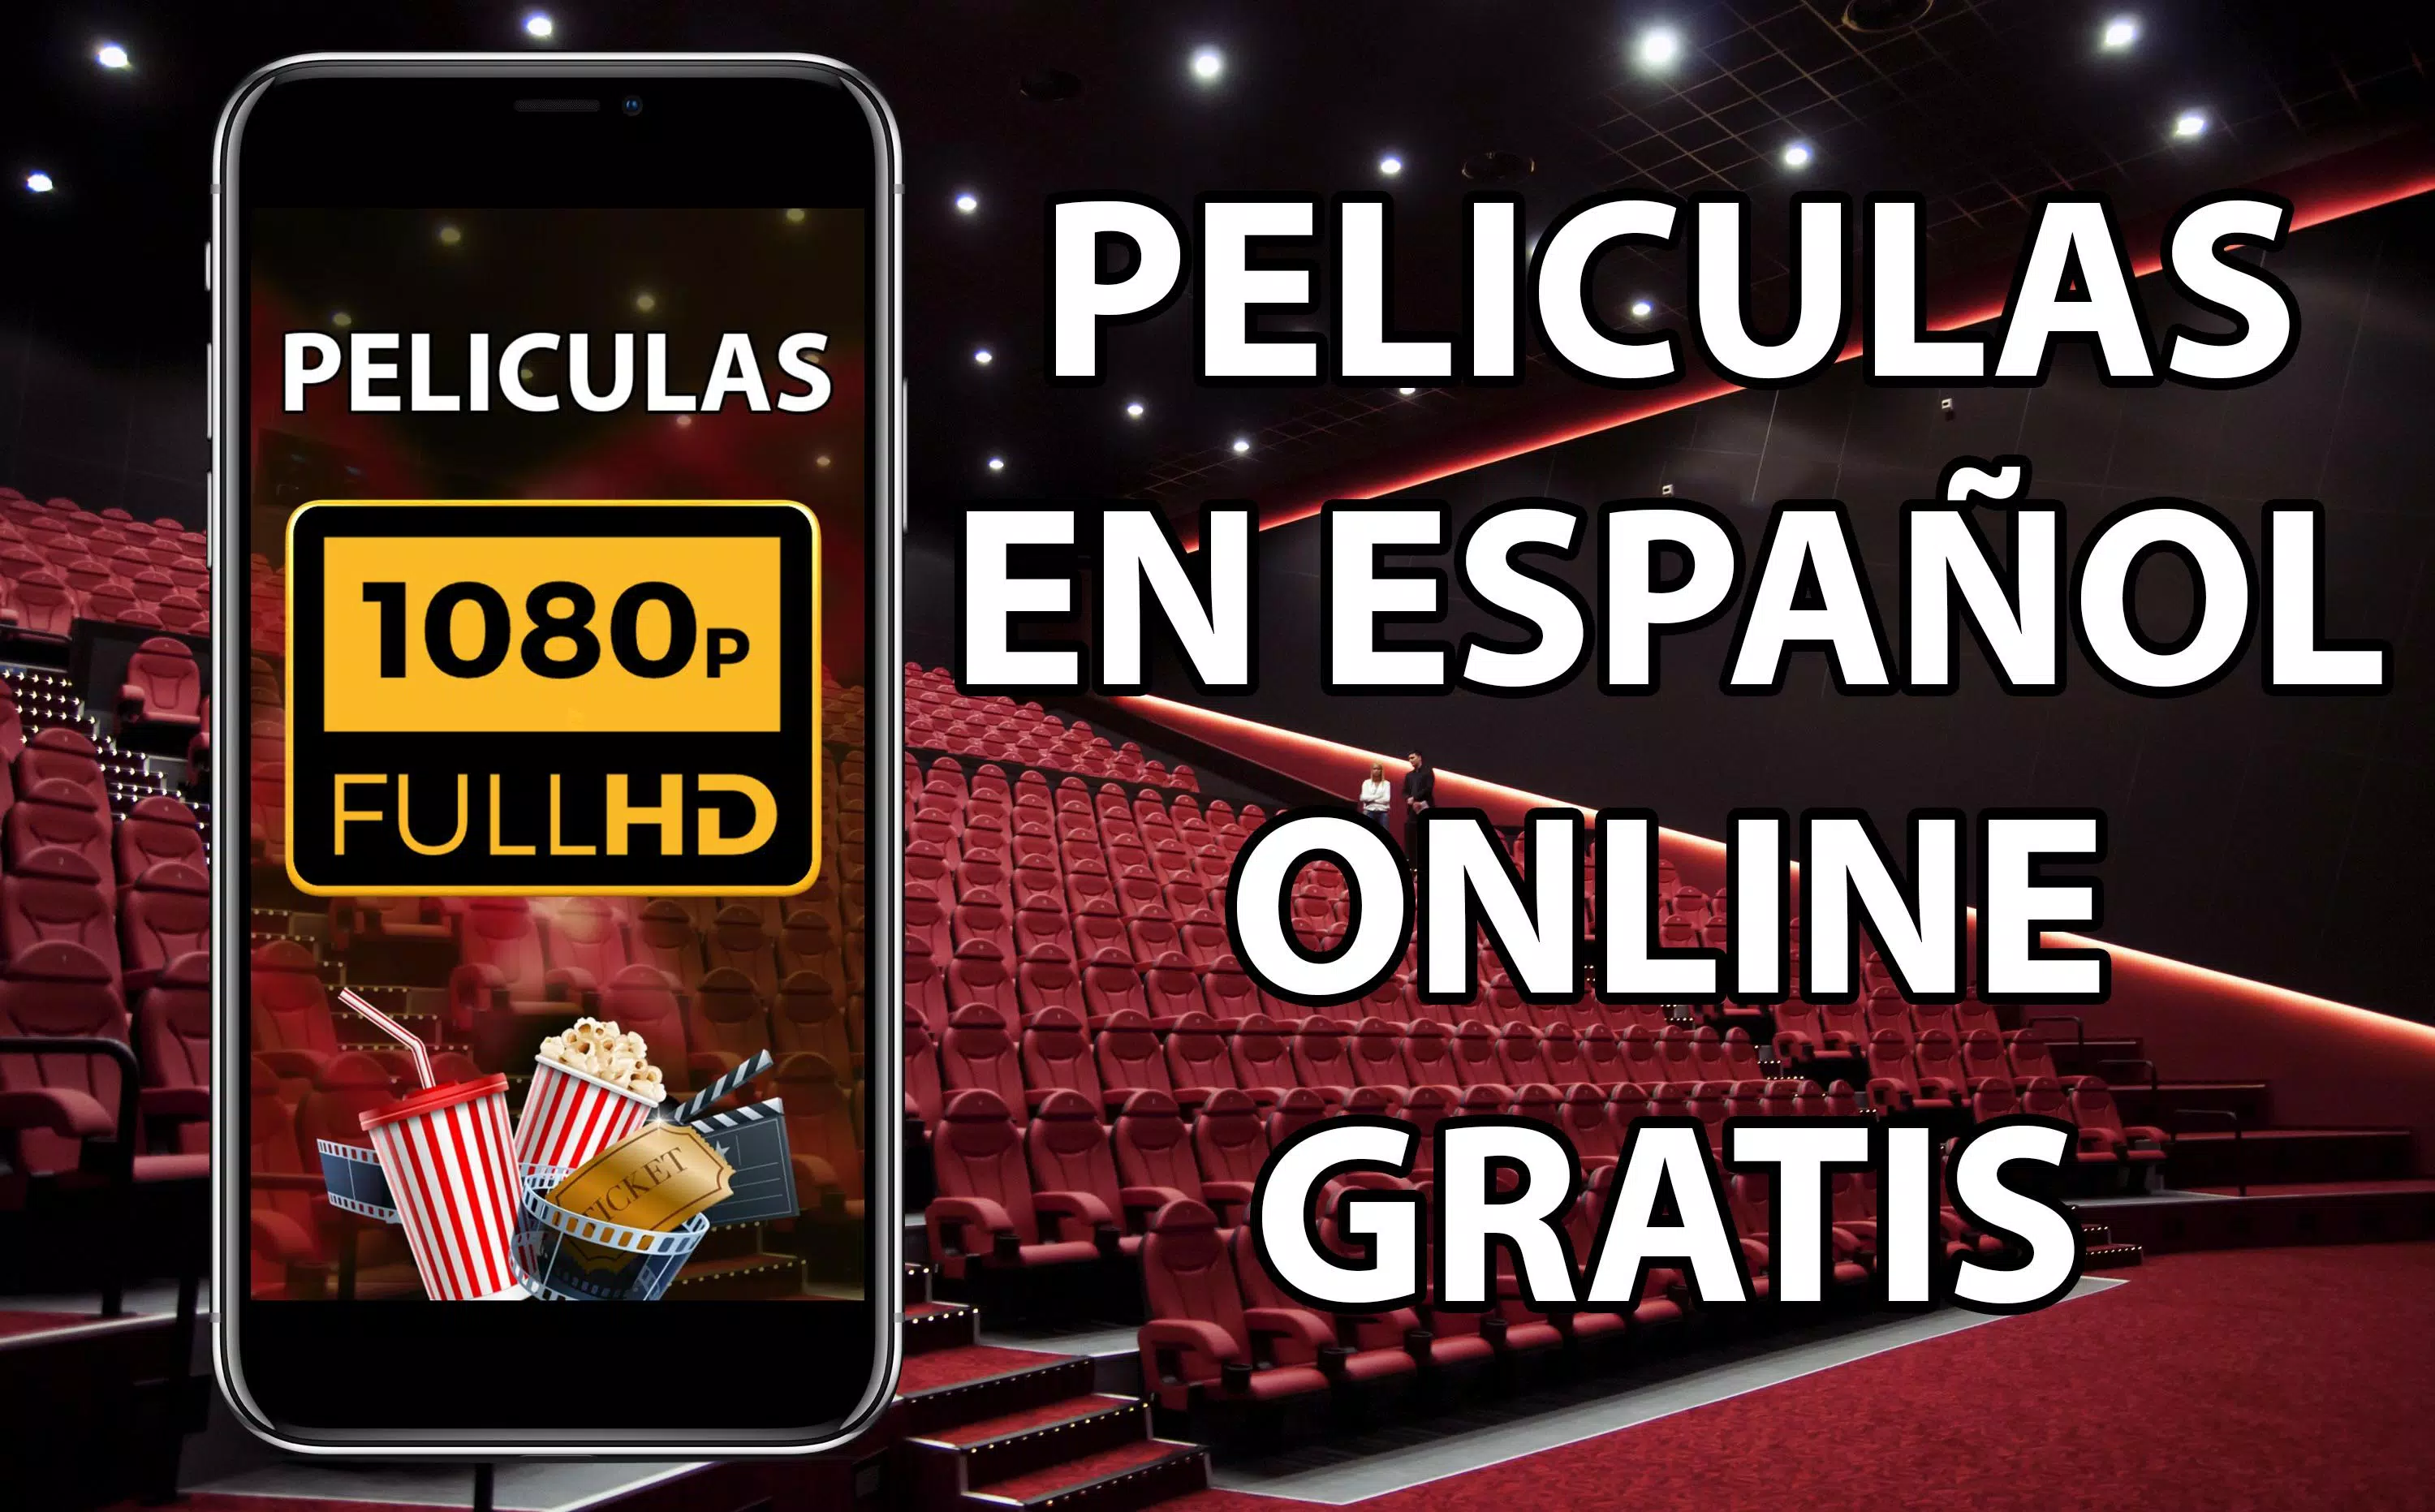 Ver peliculas online gratis en español APK for Android Download